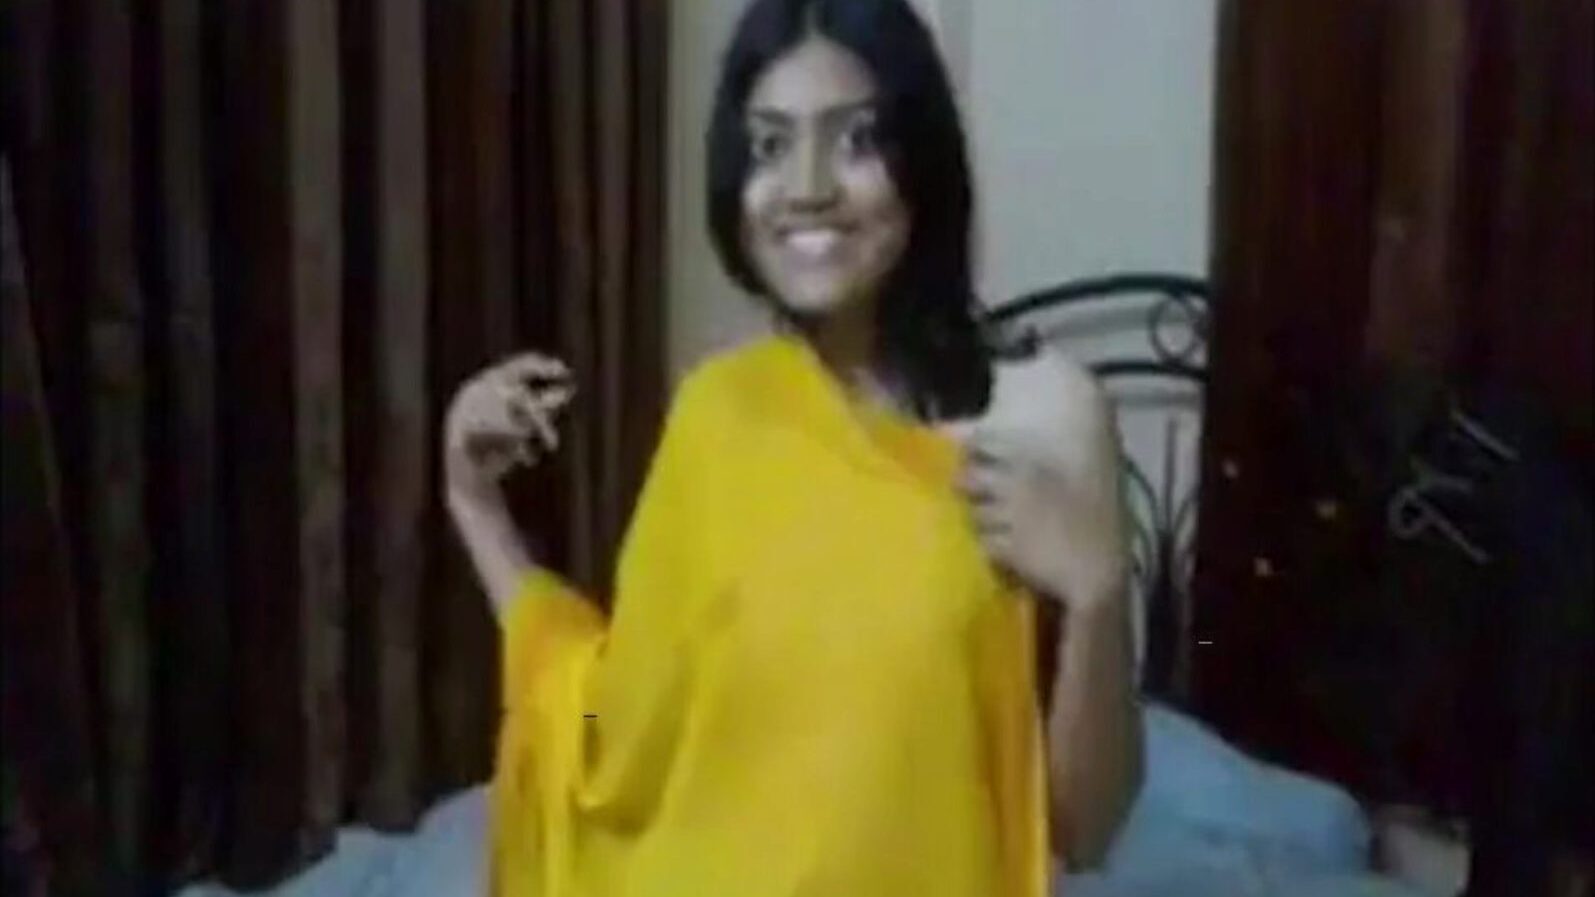 indisch college meisje neuken door stiefbroer, porno 0c: xhamster bekijk indisch college meisje neuken door stiefbroer film op xhamster, de gigantische hd orgie tube site met tonnen gratis Aziatische neuk online & pijpbeurt porno afleveringen